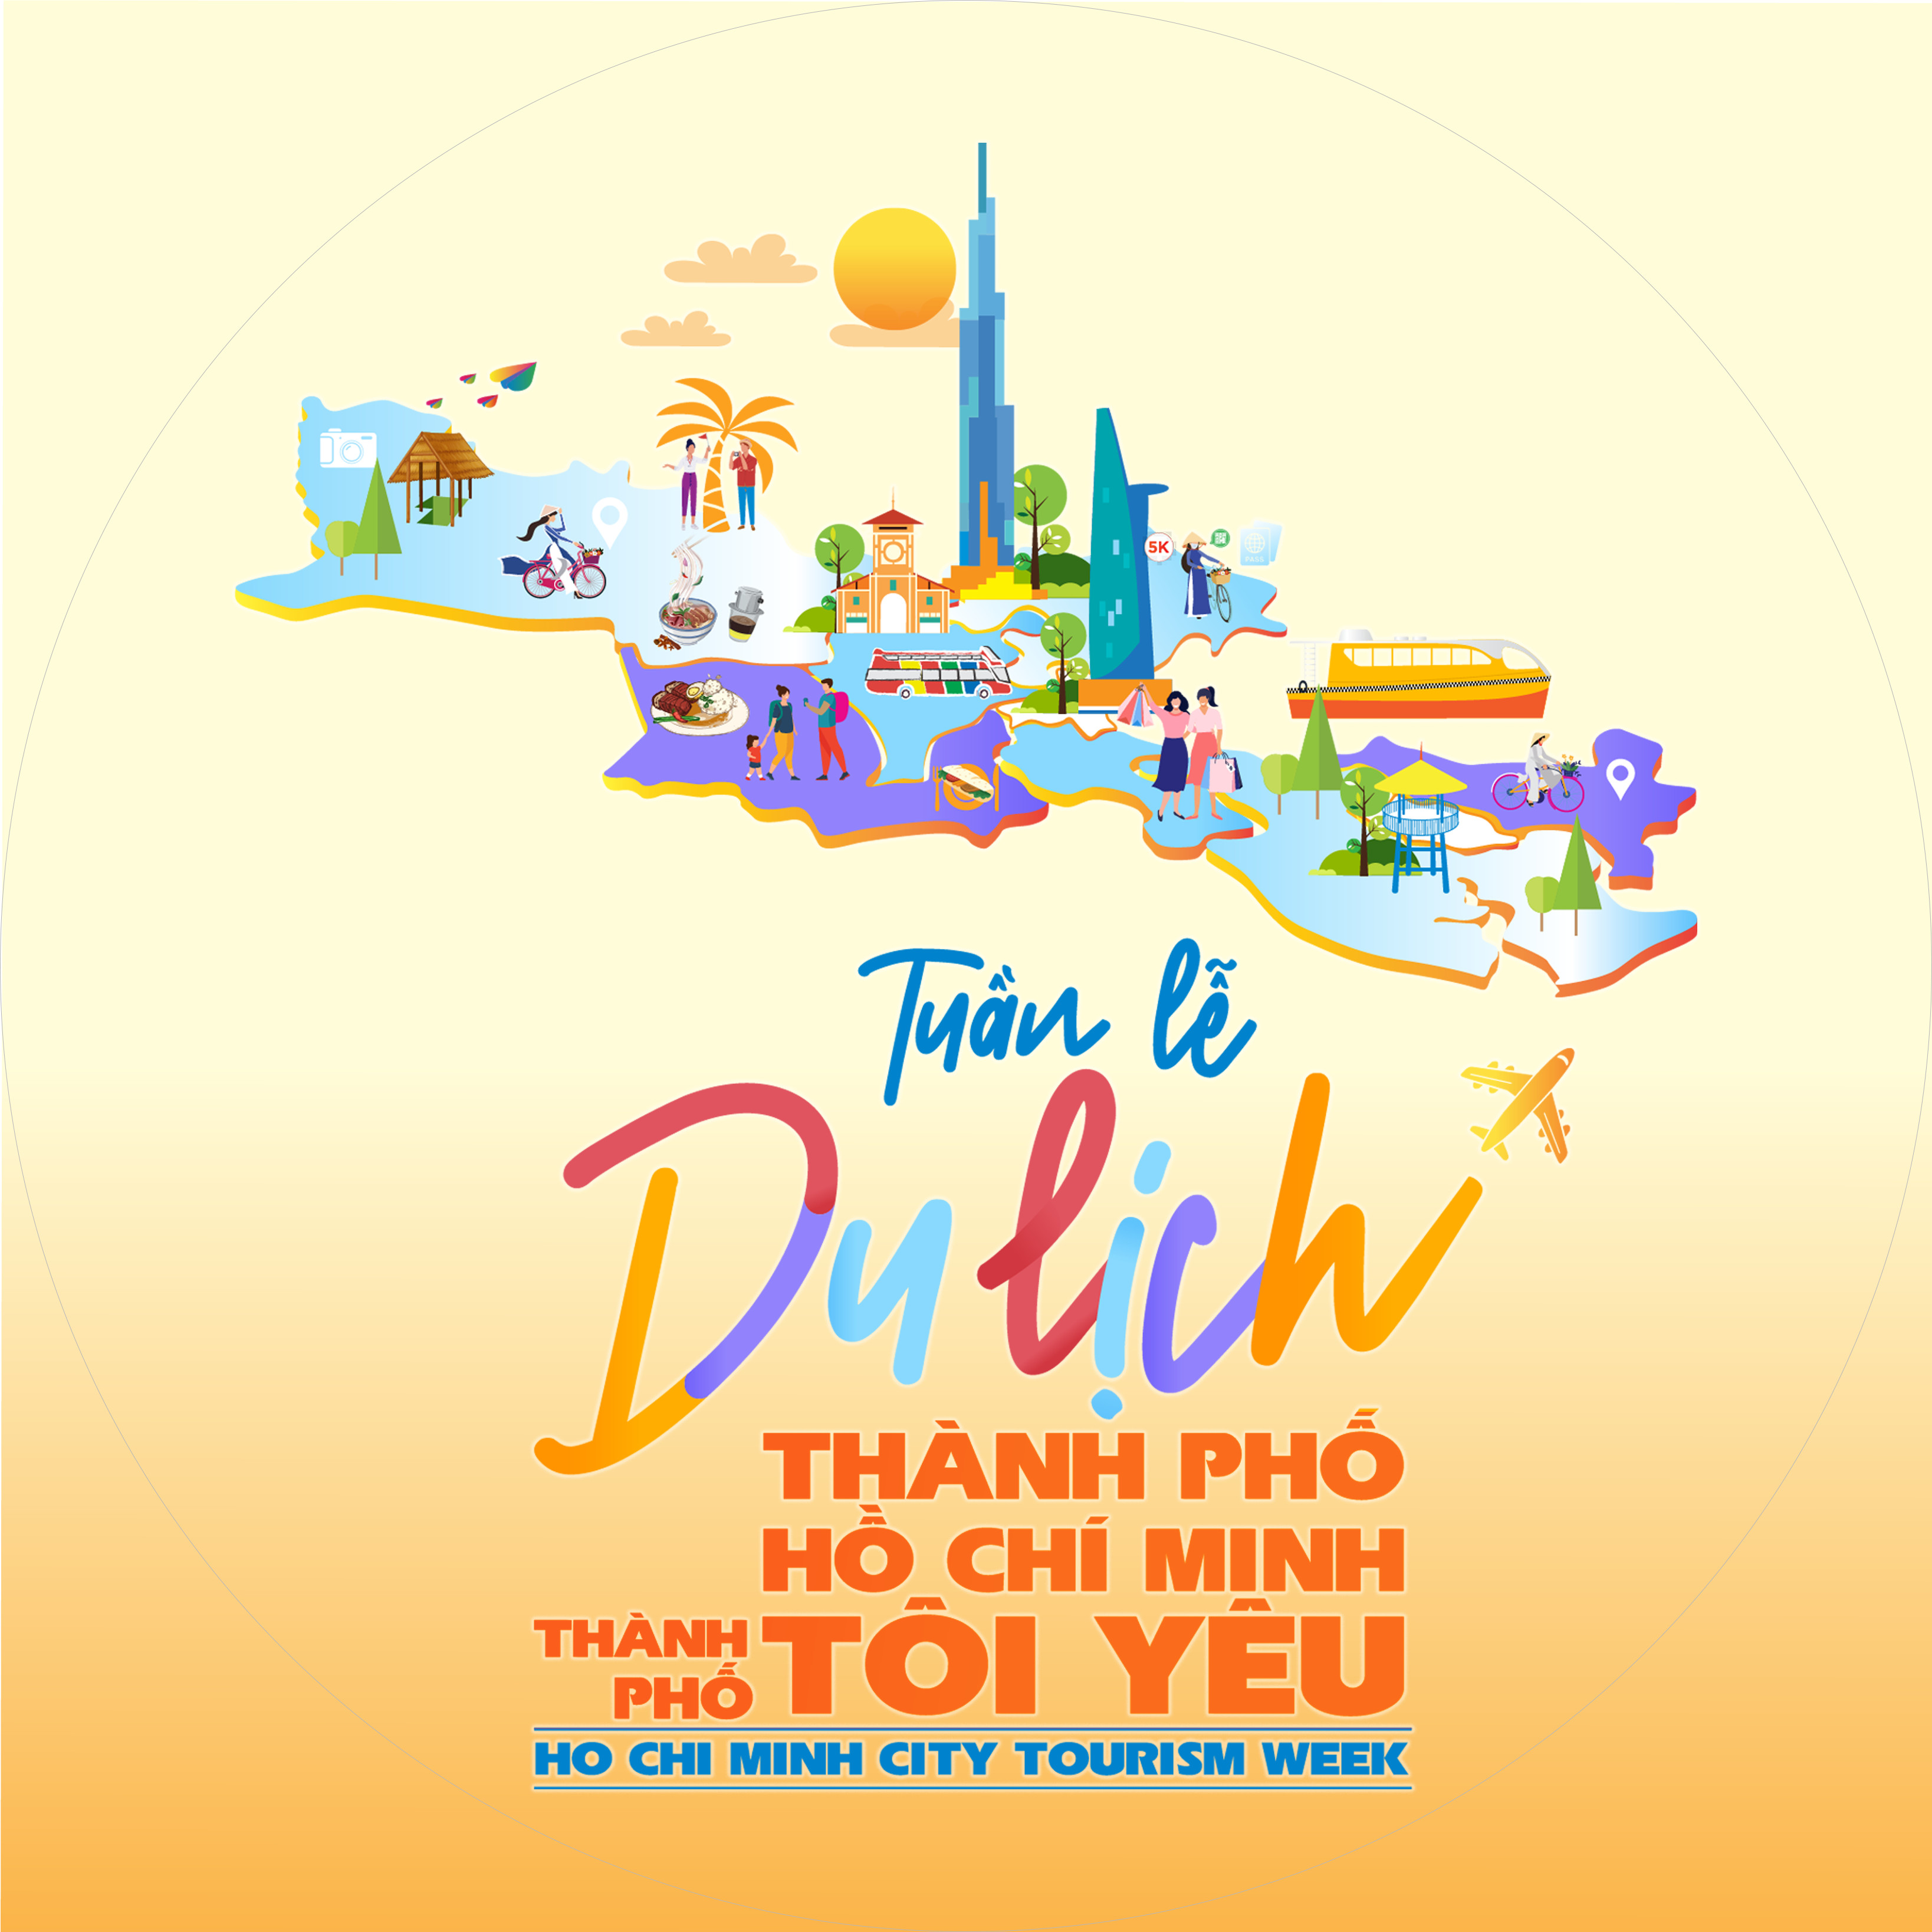 [NEWS] KHAI MẠC TUẦN LỄ DU LỊCH THÀNH PHỐ HỒ CHÍ MINH 2021 | HO CHI MINH CITY TOURISM WEEK